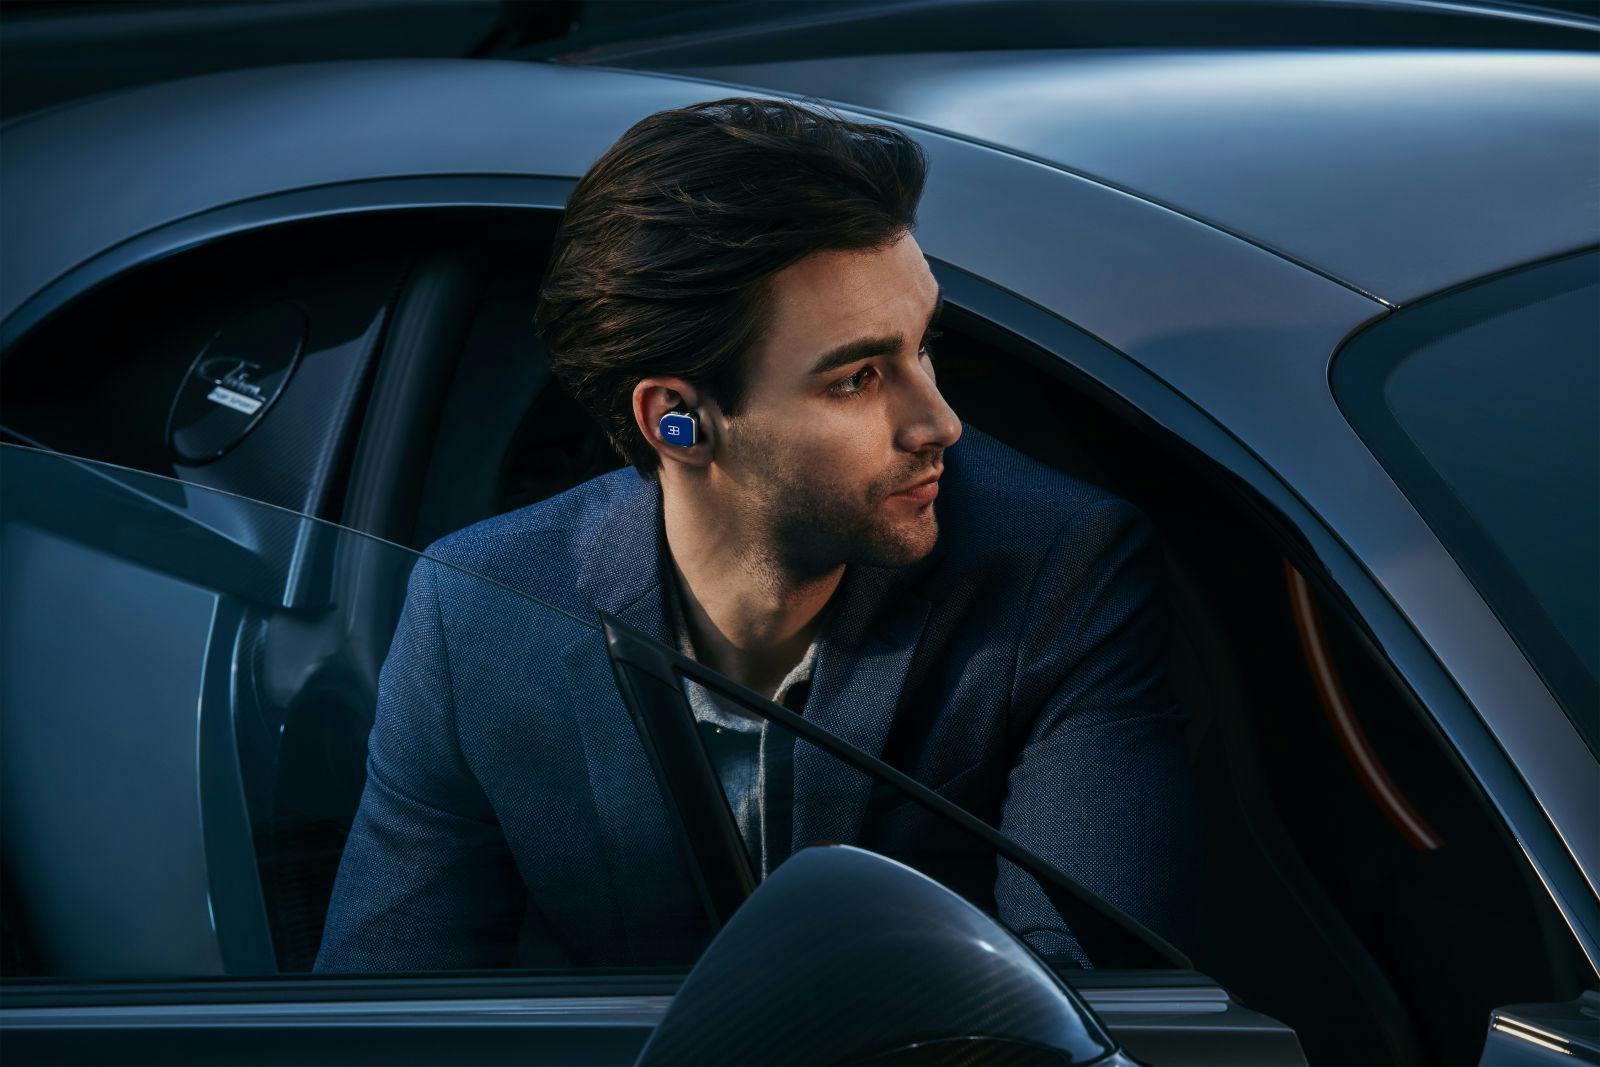 Die MW08 In-Ear-Kopfhörer mit aktiver Geräuschunterdrückung sind leicht und ausdauerend, mit einer Gesamtspielzeit von 42 Stunden.